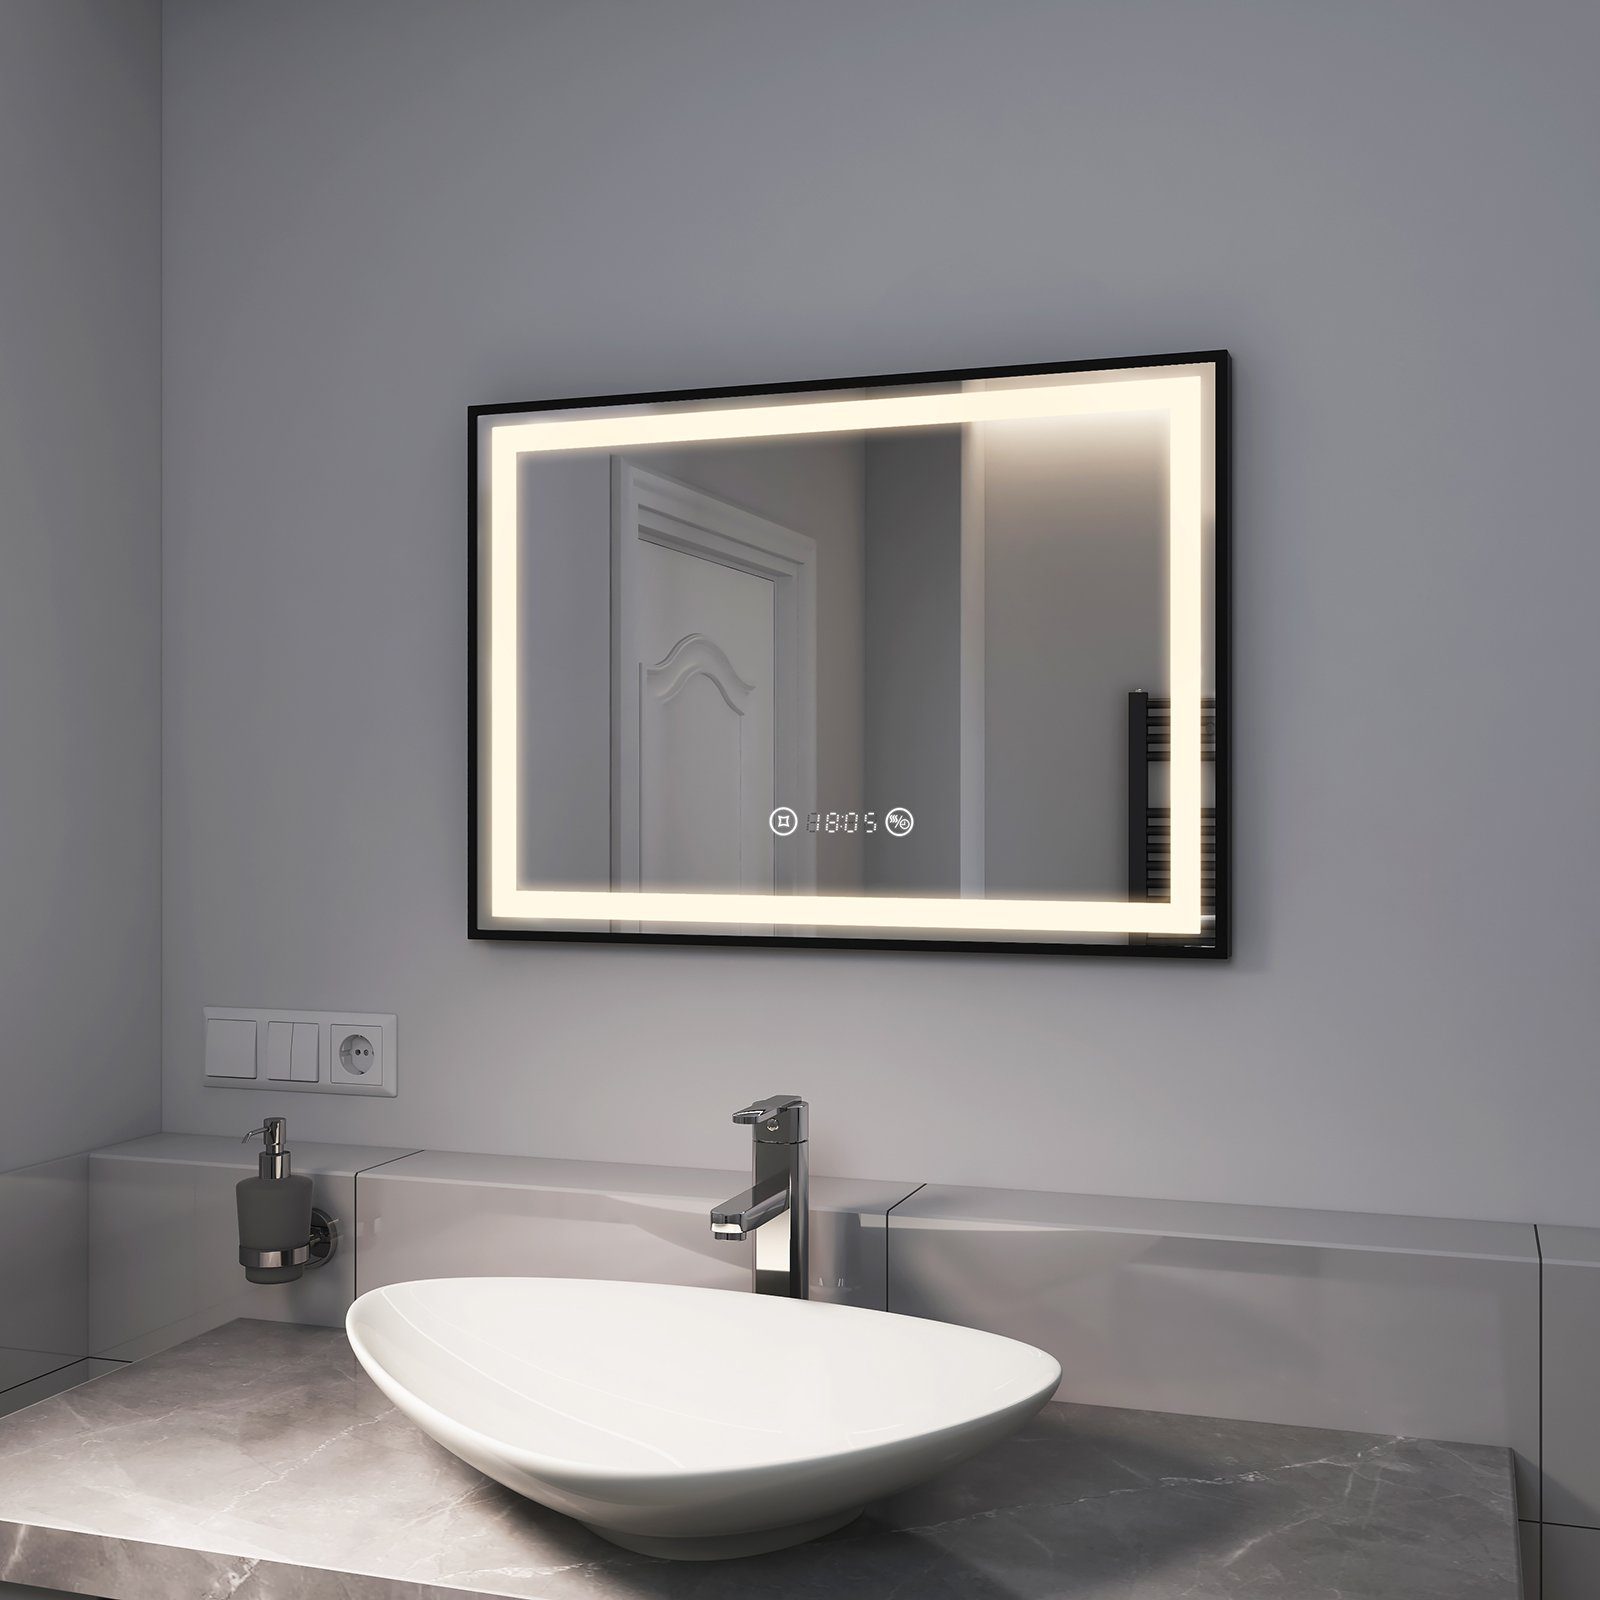 EMKE Badspiegel EMKE Badspiegel mit Beleuchtung LED Badspiegel Schwarz, mit Dimmbar, Beschlagfrei, Uhr, Speicherfunktion